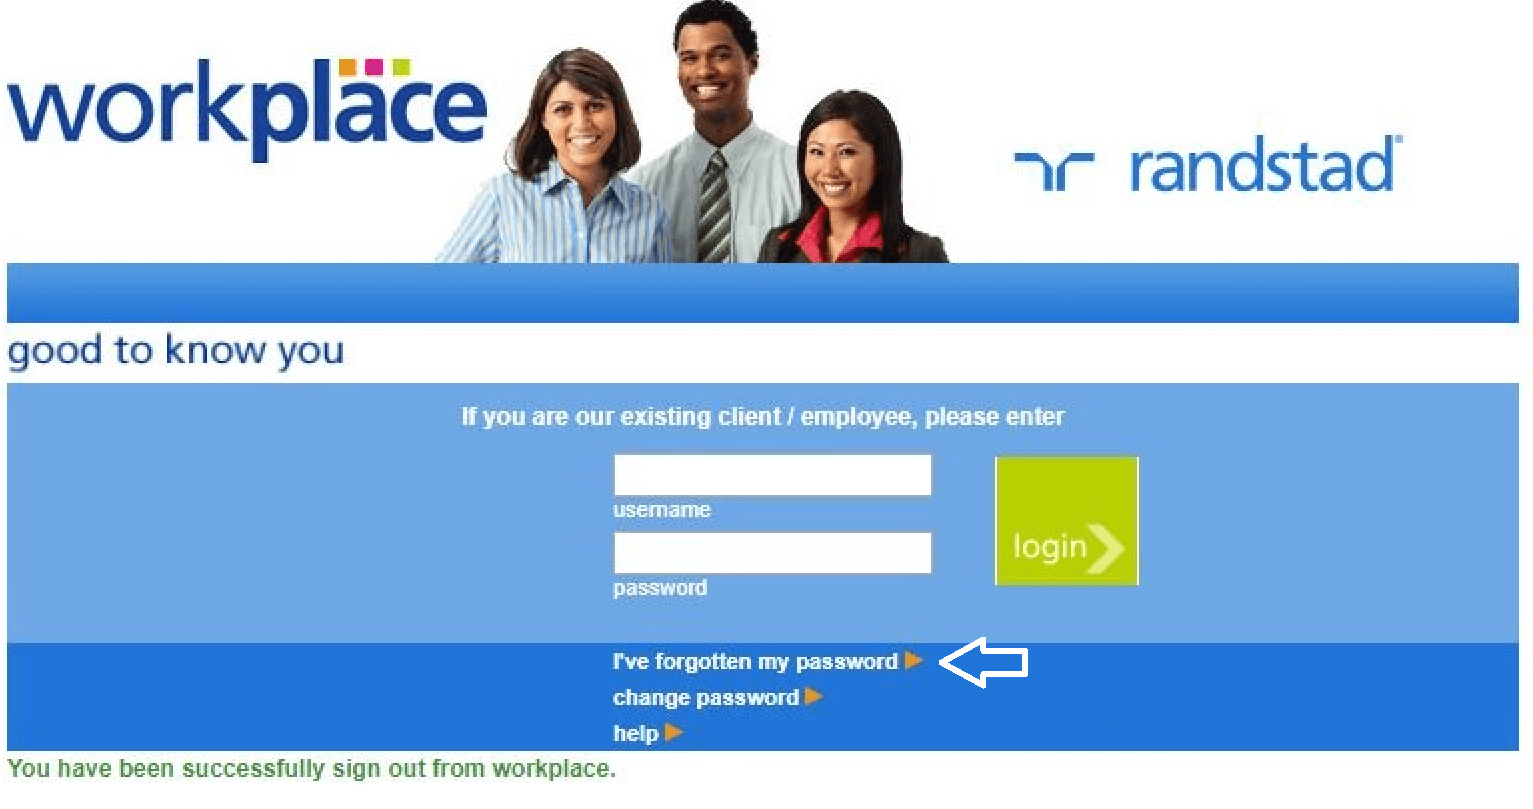 reset randstad workplace login password